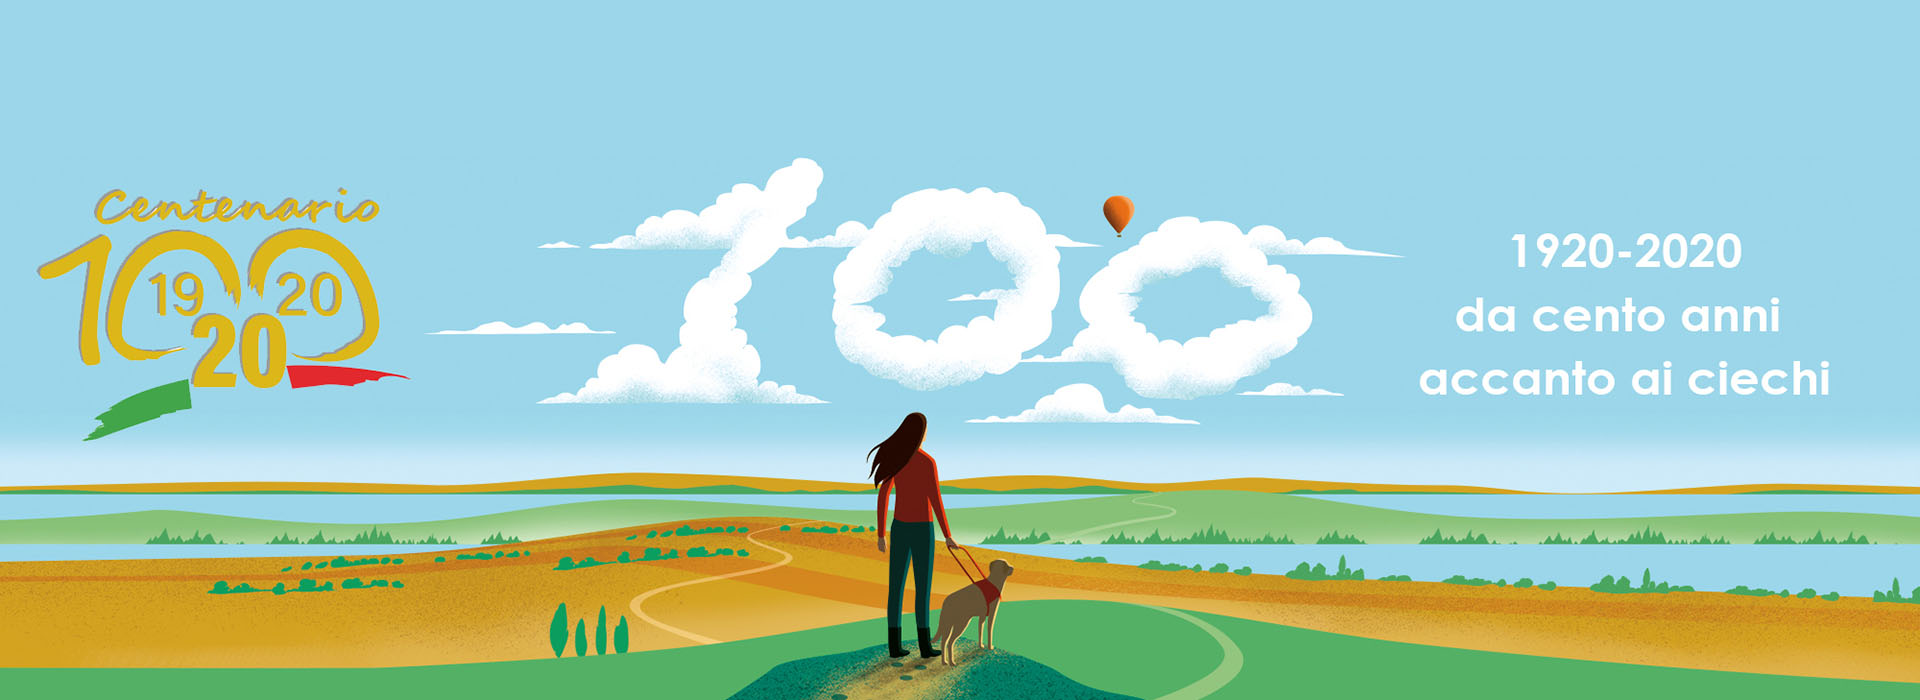 Immagine grafica di donna di spalle con cane guida immersata in un paesaggio collinare. Ai lati Logo dell'Unione italiana ciechie e ipovedenti e del Centenario dell'Associazione